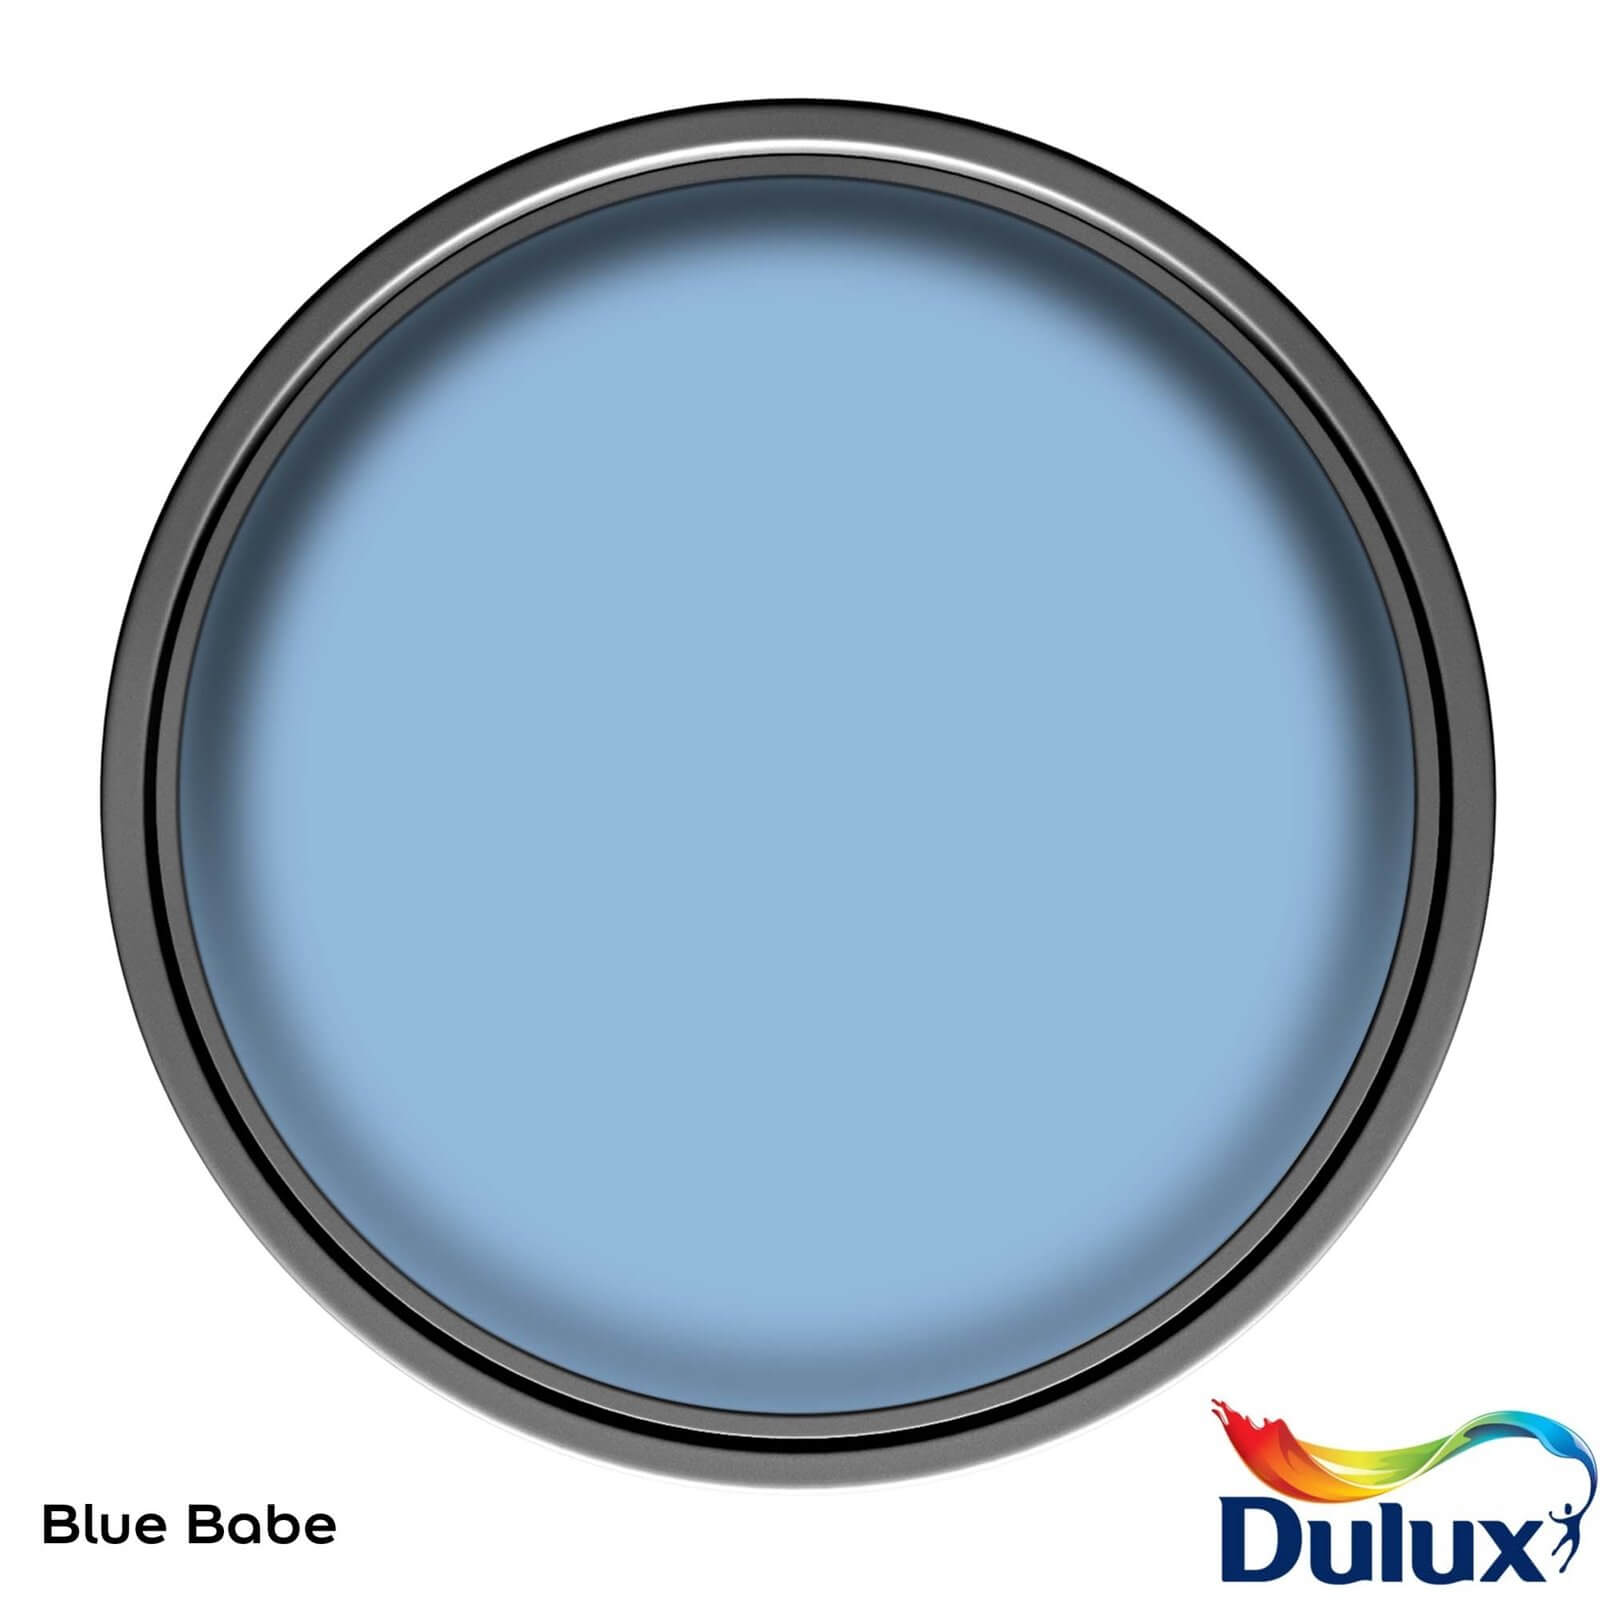 Dulux Easycare Washable & Tough Matt Paint Blue Babe - 2.5L